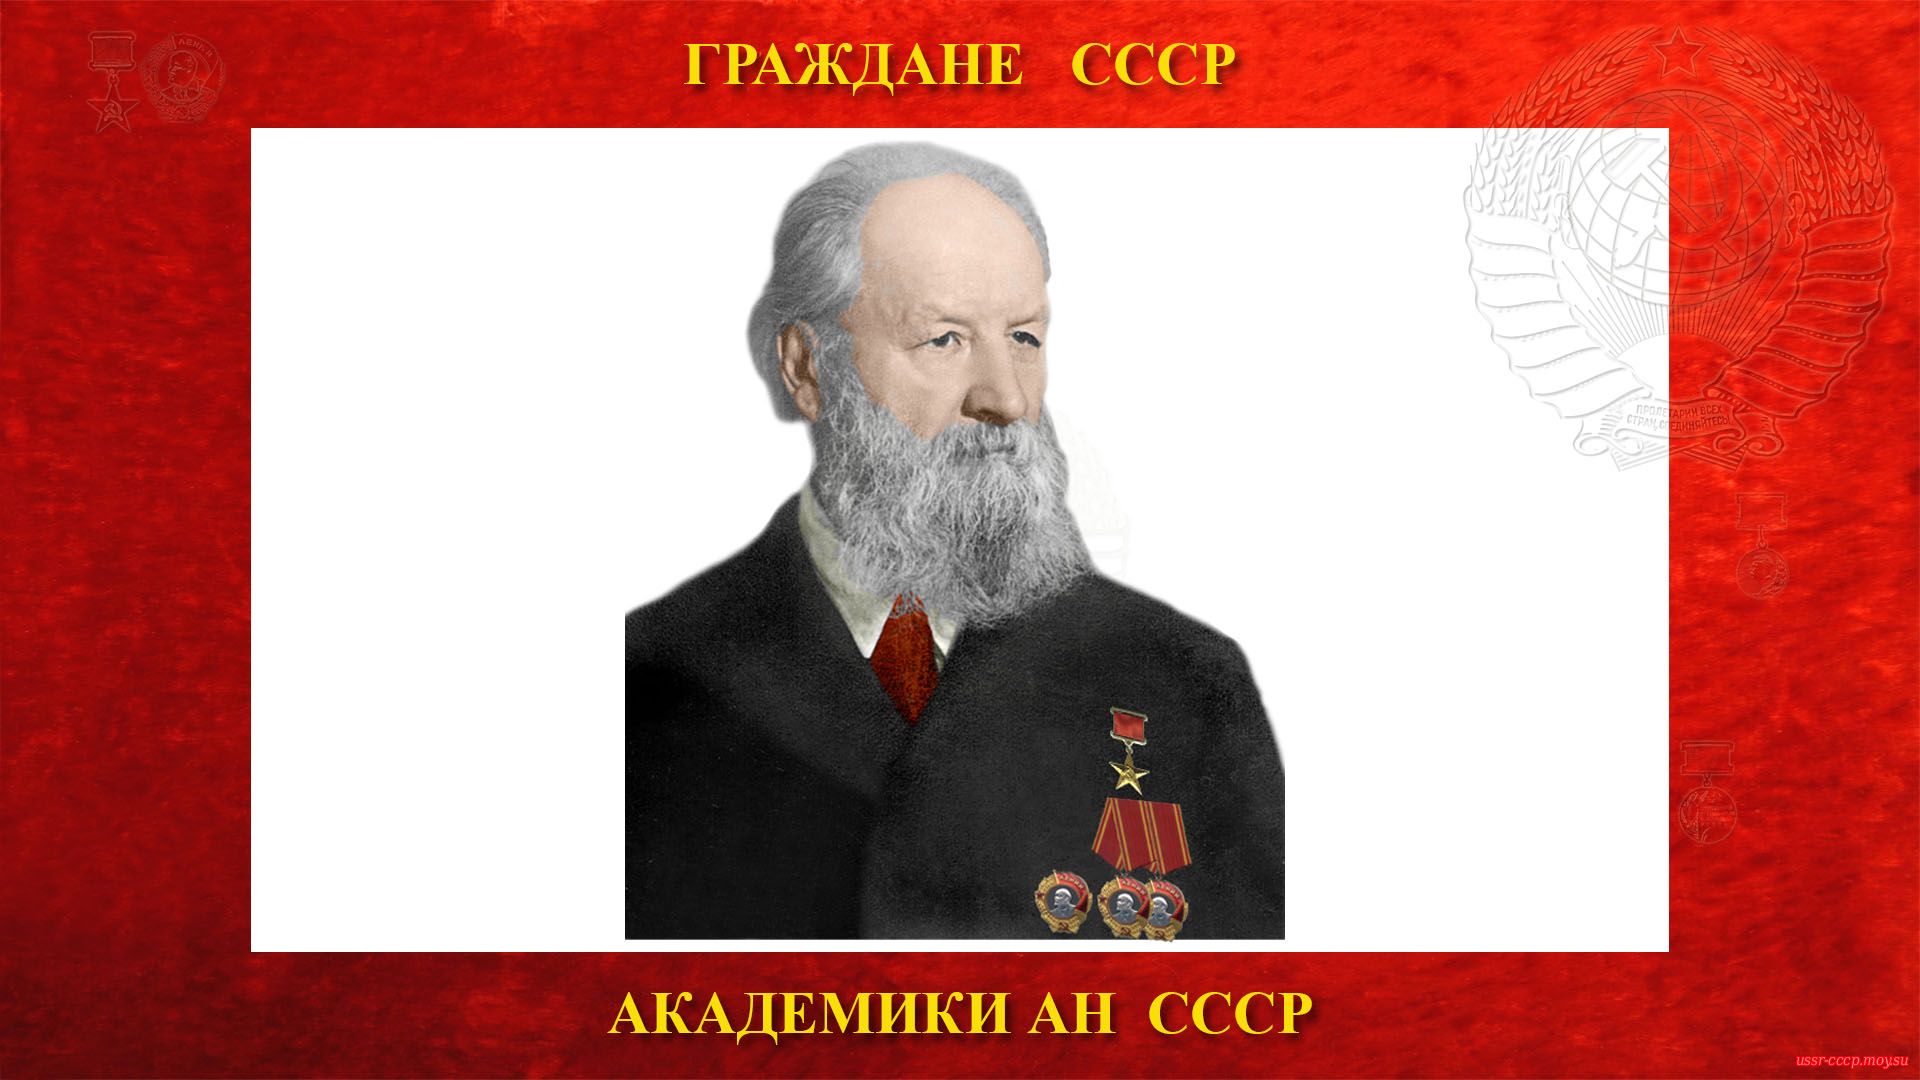 Крылов Алексей Николаевич